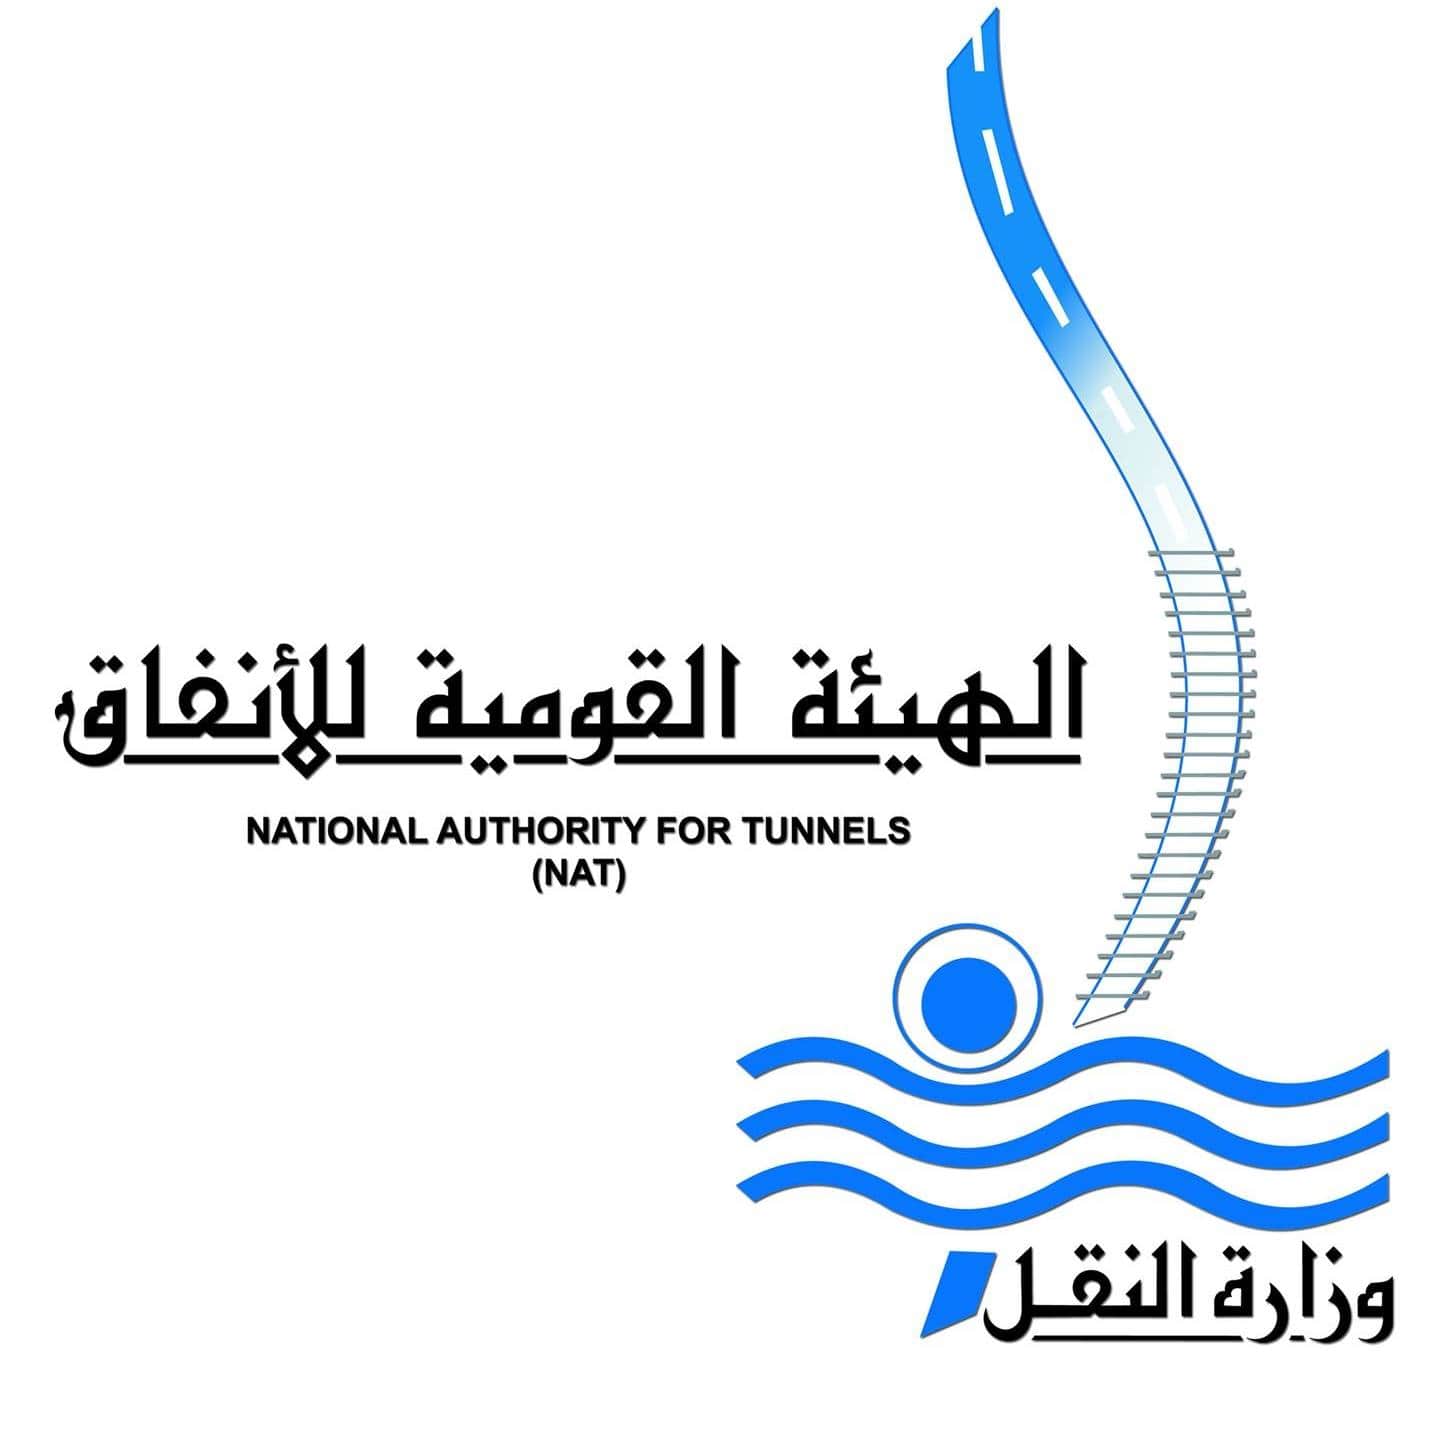 اعلان وظائف الهيئة القومية للانفاق - الشركة المصرية لإدارة وتشغيل مترو الانفاق- للمؤهلات العليا والدبلومات والفنيين بتاريخ 11 يناير 2023